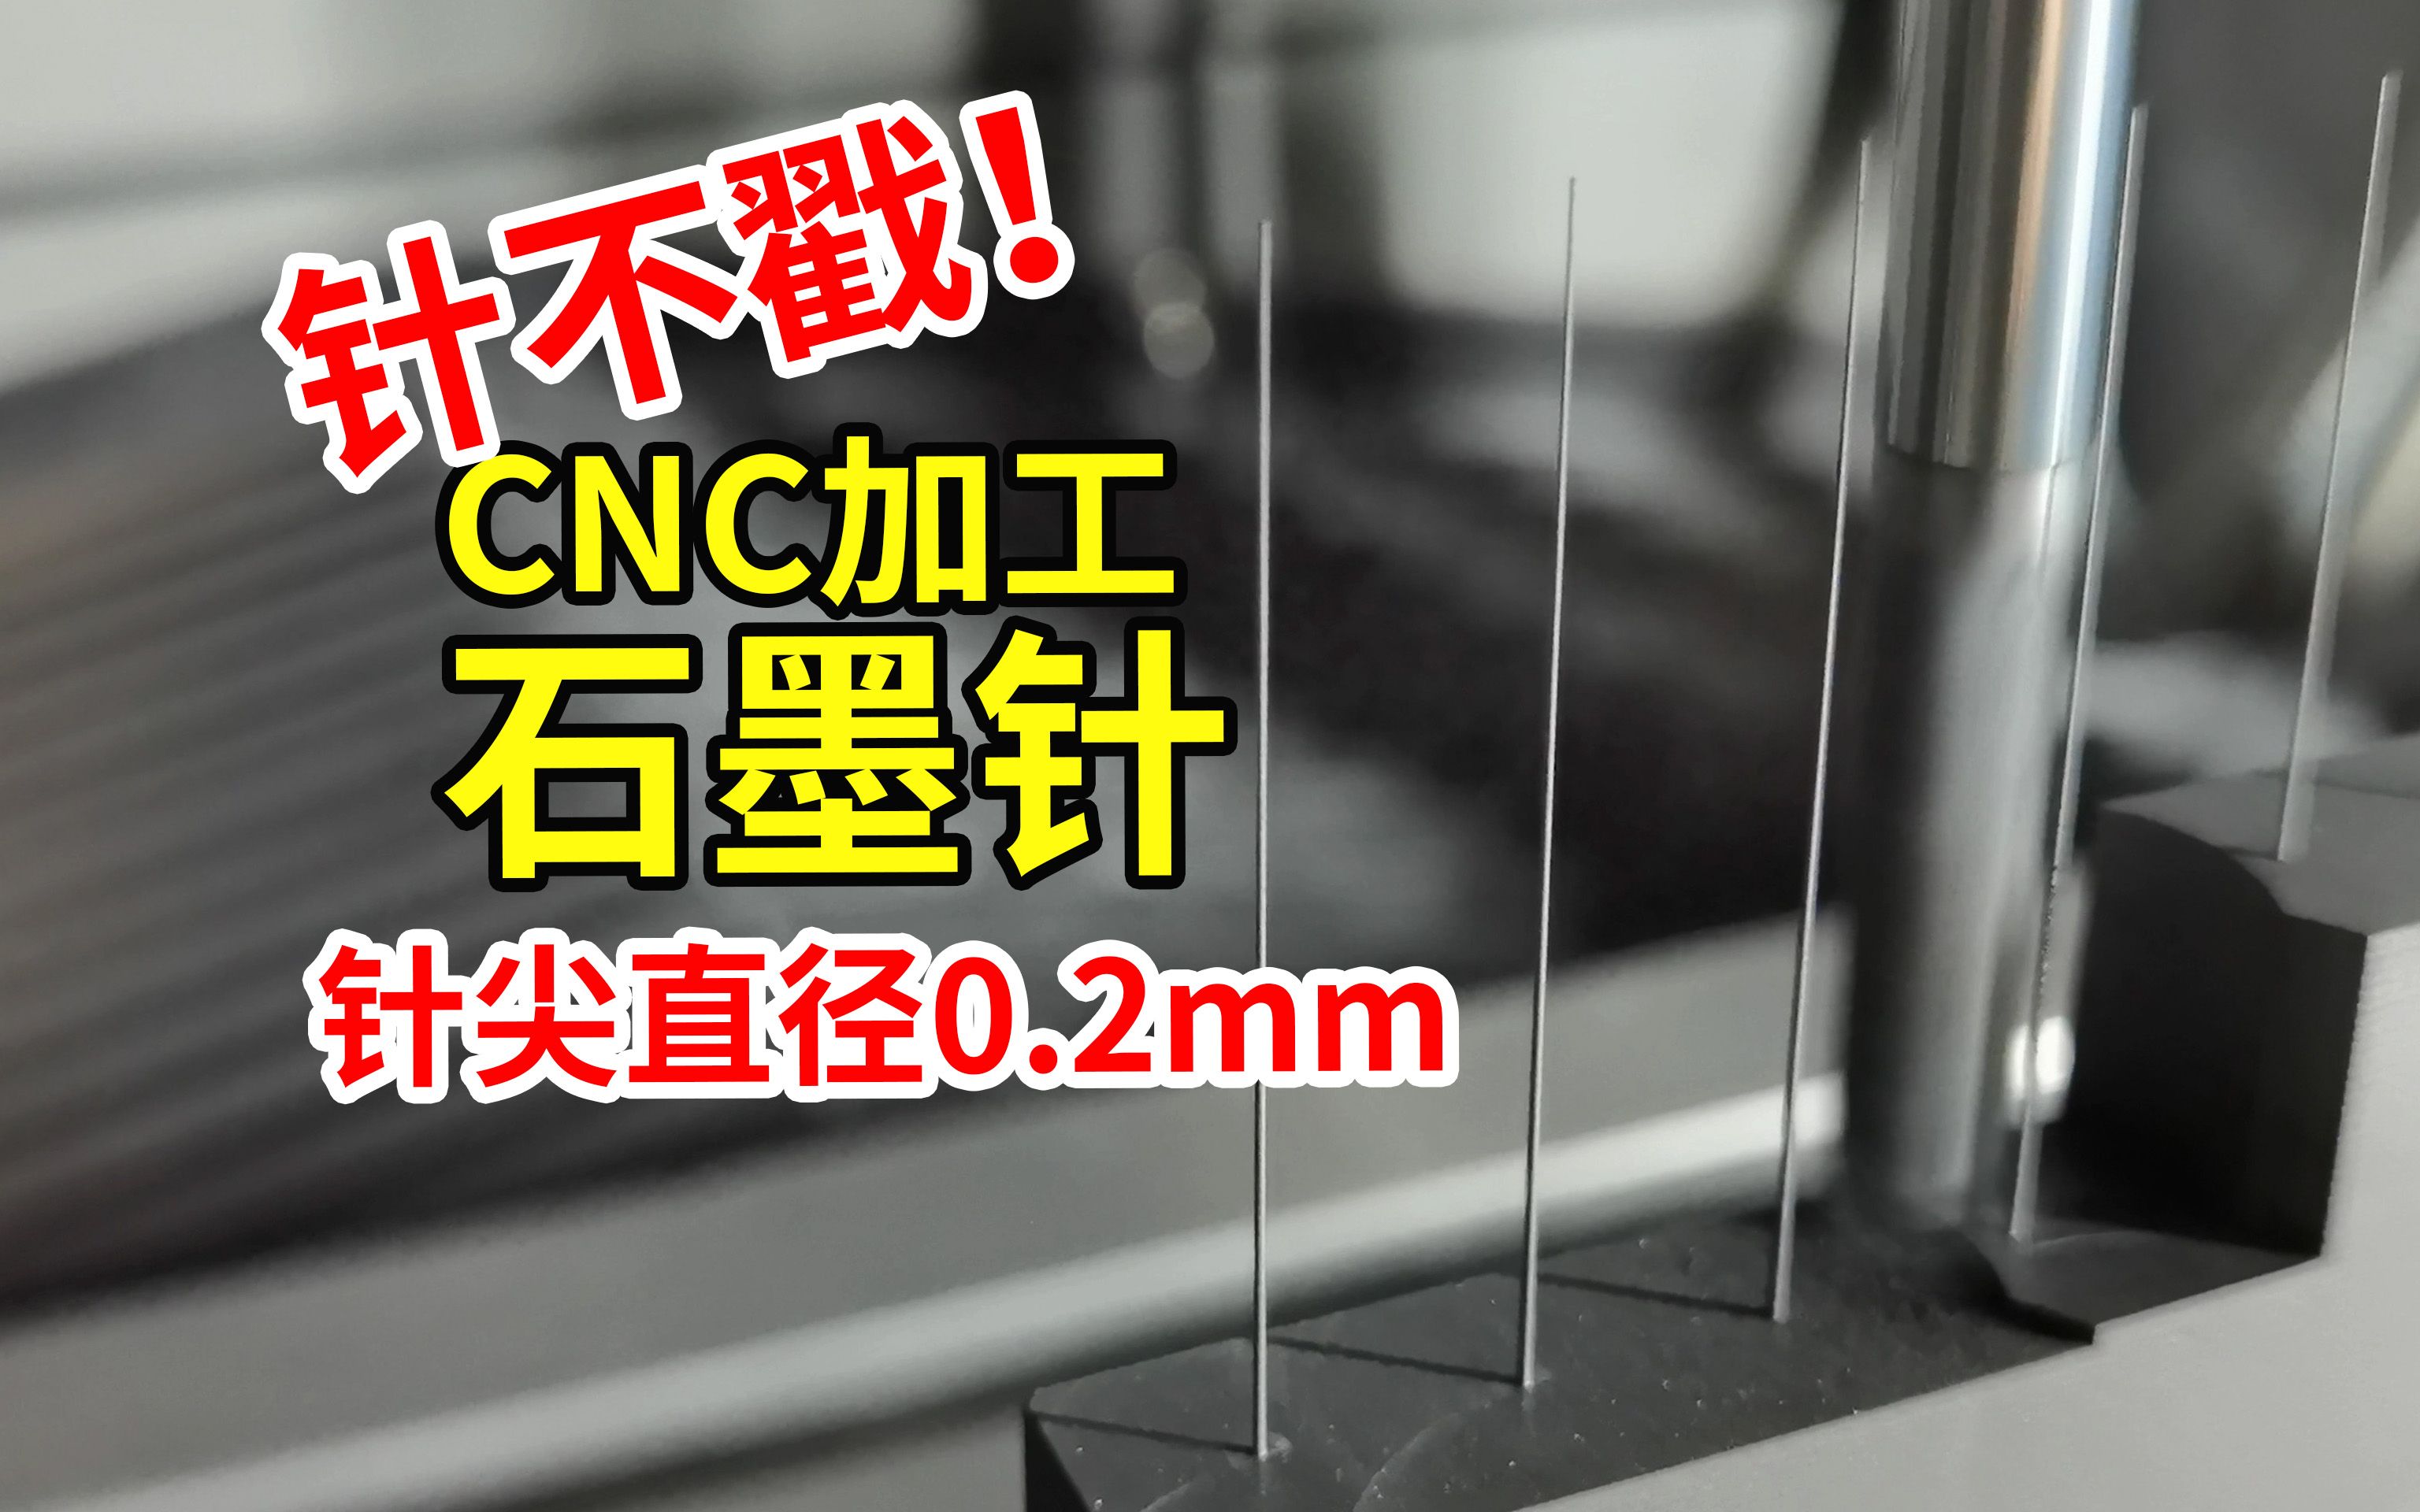 针不戳！CNC加工石墨针电火花加工电极，针尖直径0.2mm